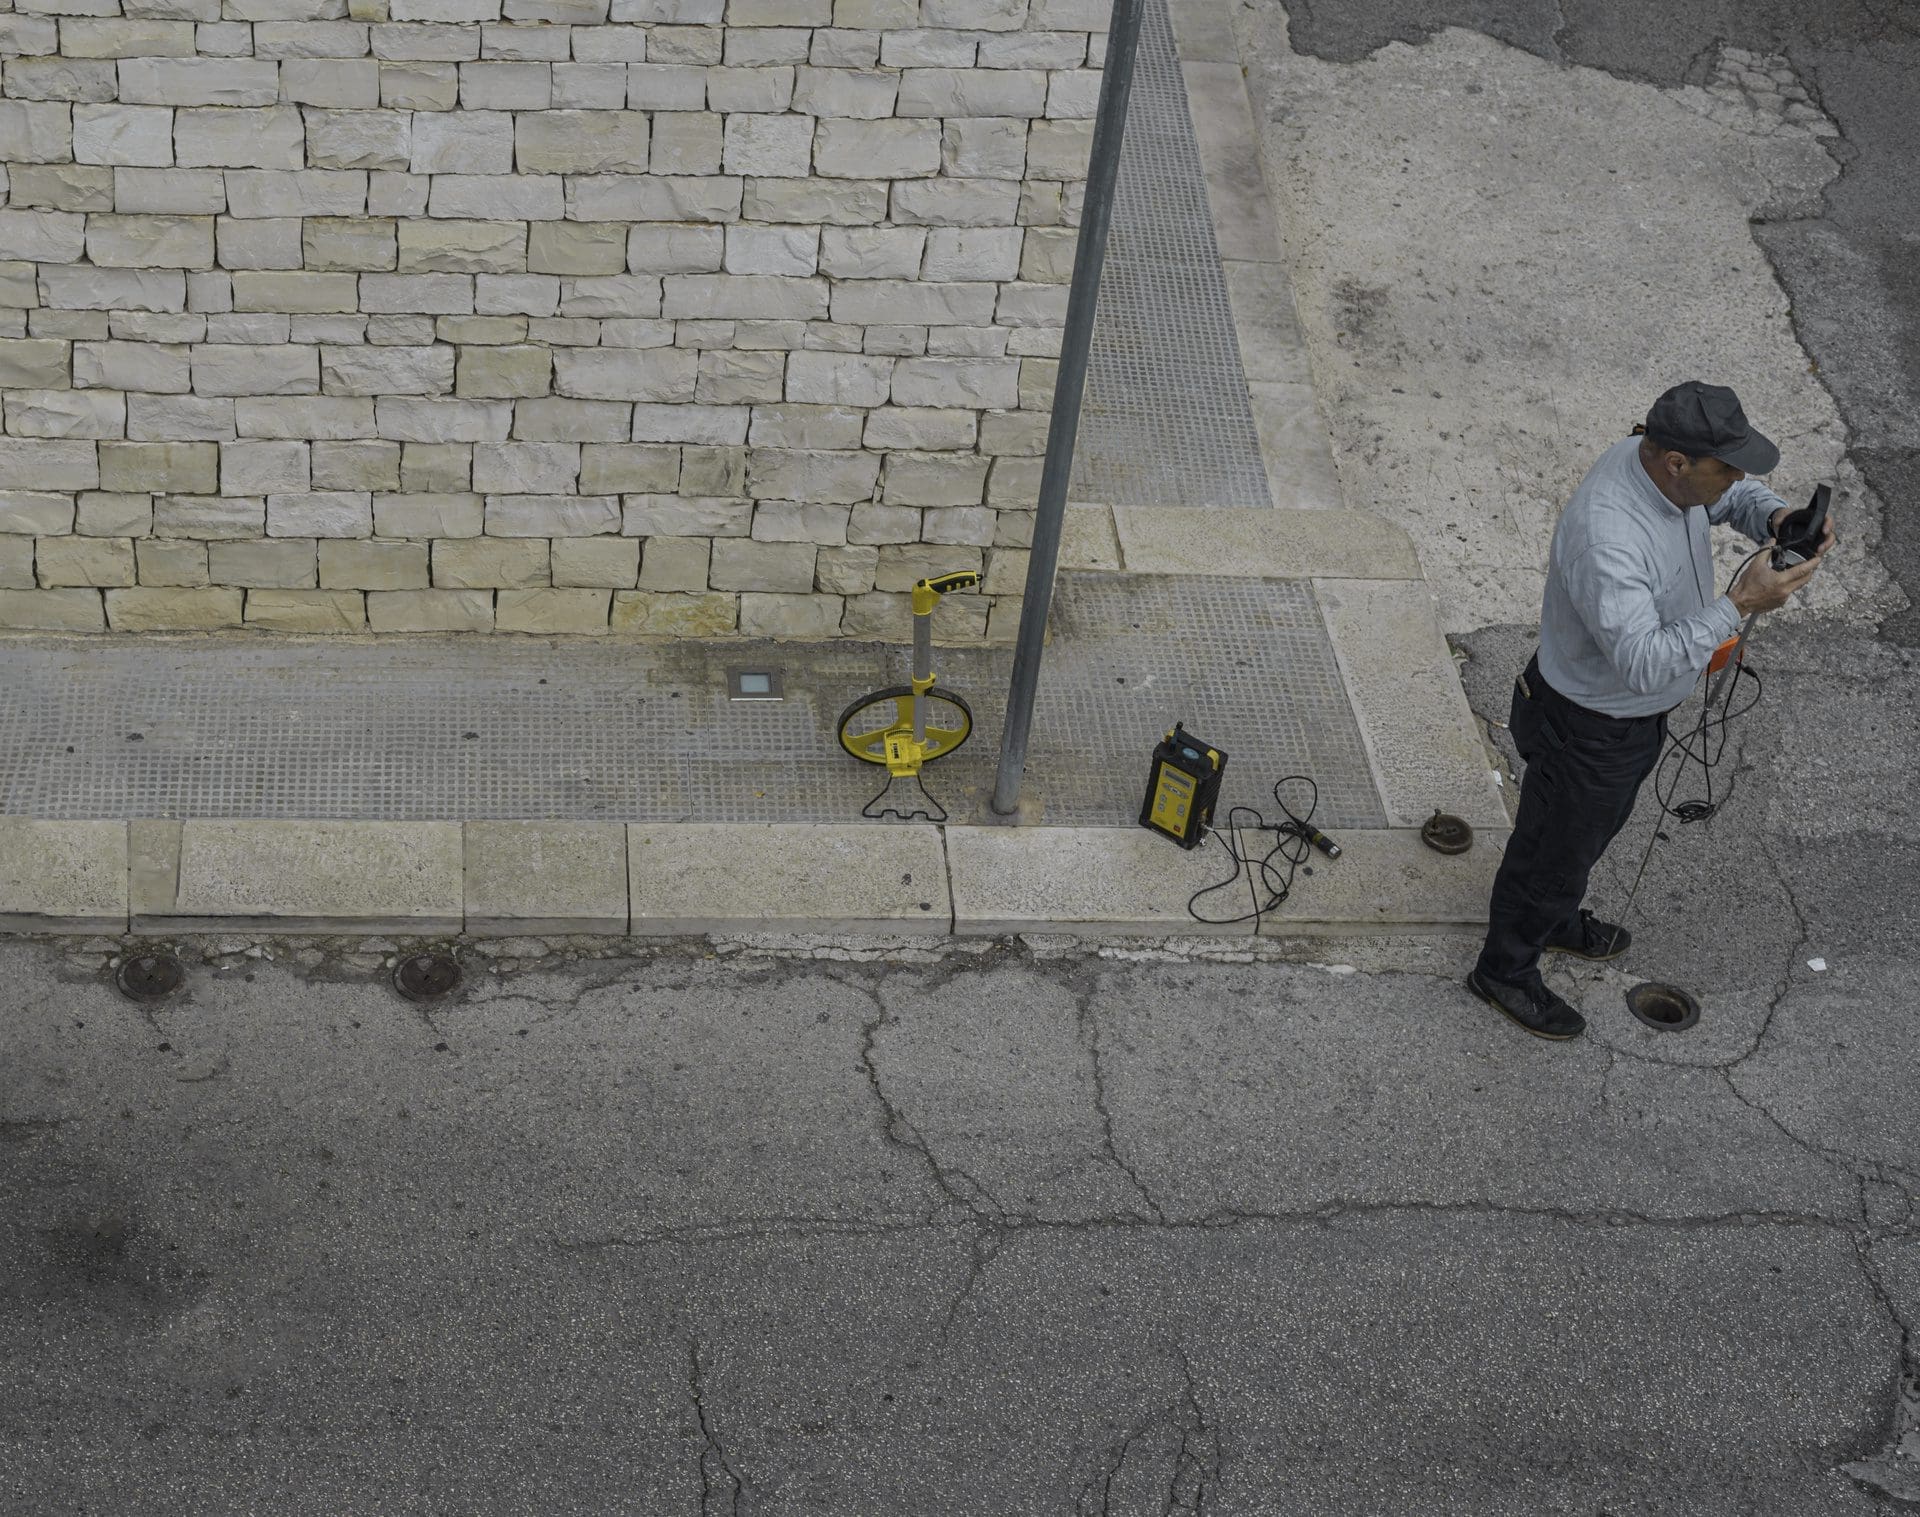 Rohrbruchortung draußen auf der Straße vor dem Gebäude - Experten nutzen für die Leckortung unterschiedliche Technik (© peuceta / stock.adobe.com)